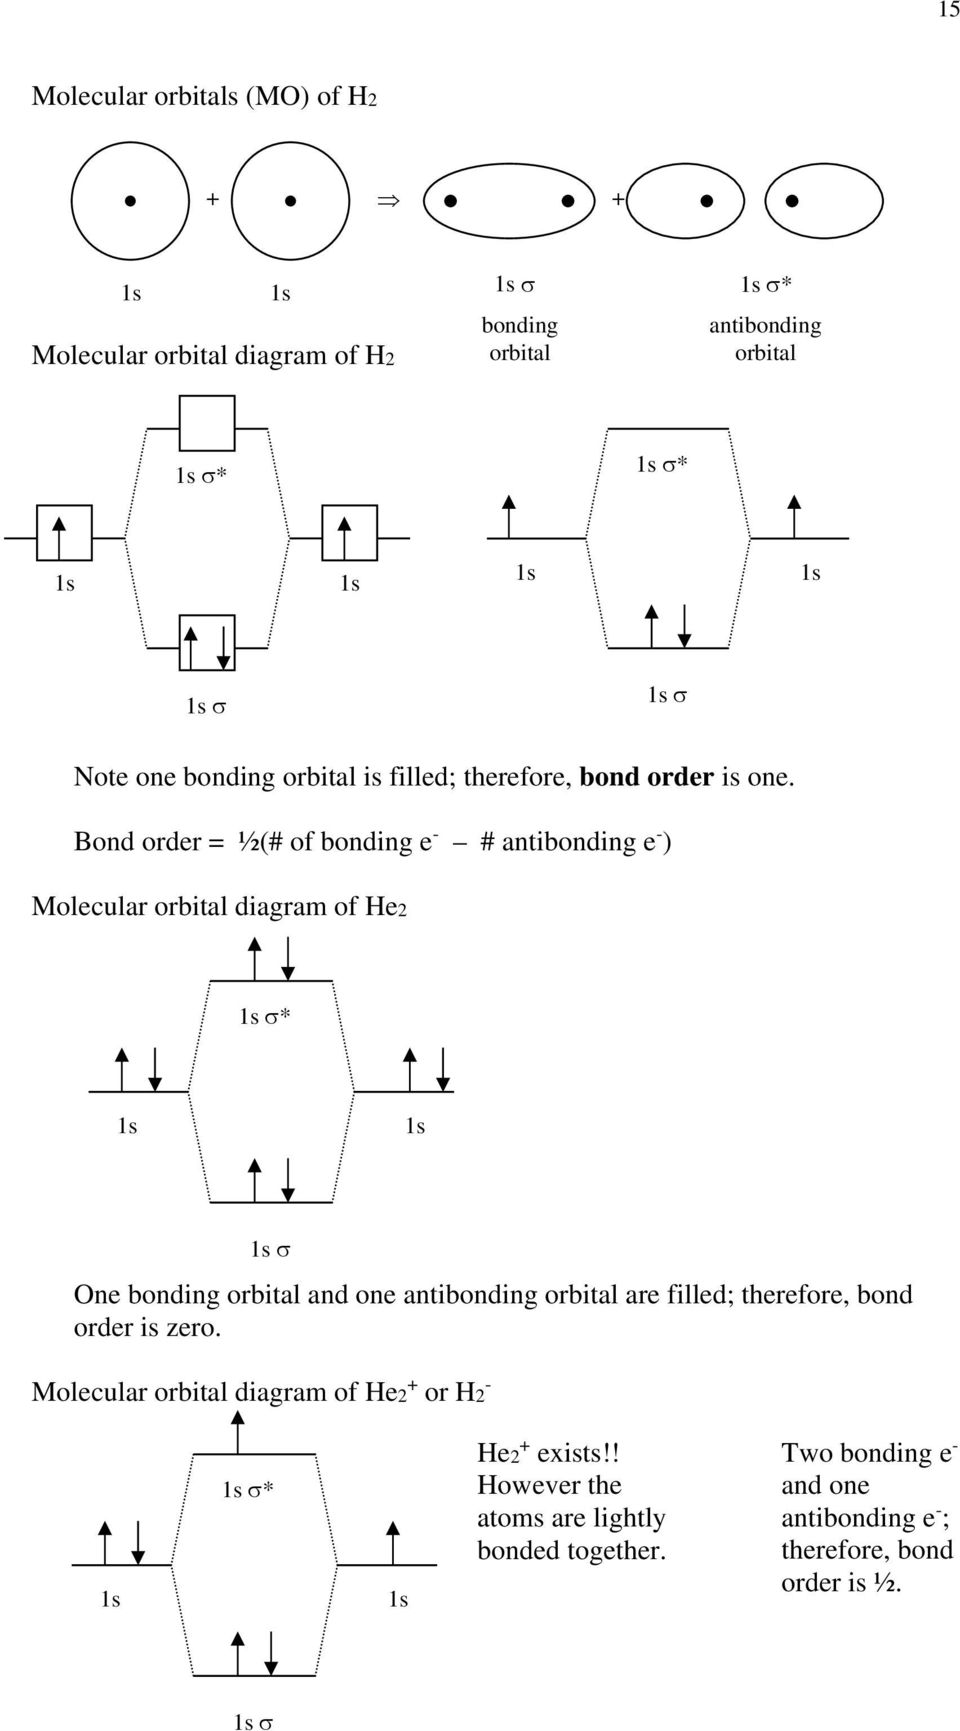 Bond order = ½(# of bonding e - # antibonding e - ) Molecular orbital diagram of e2 * ne bonding orbital and one antibonding